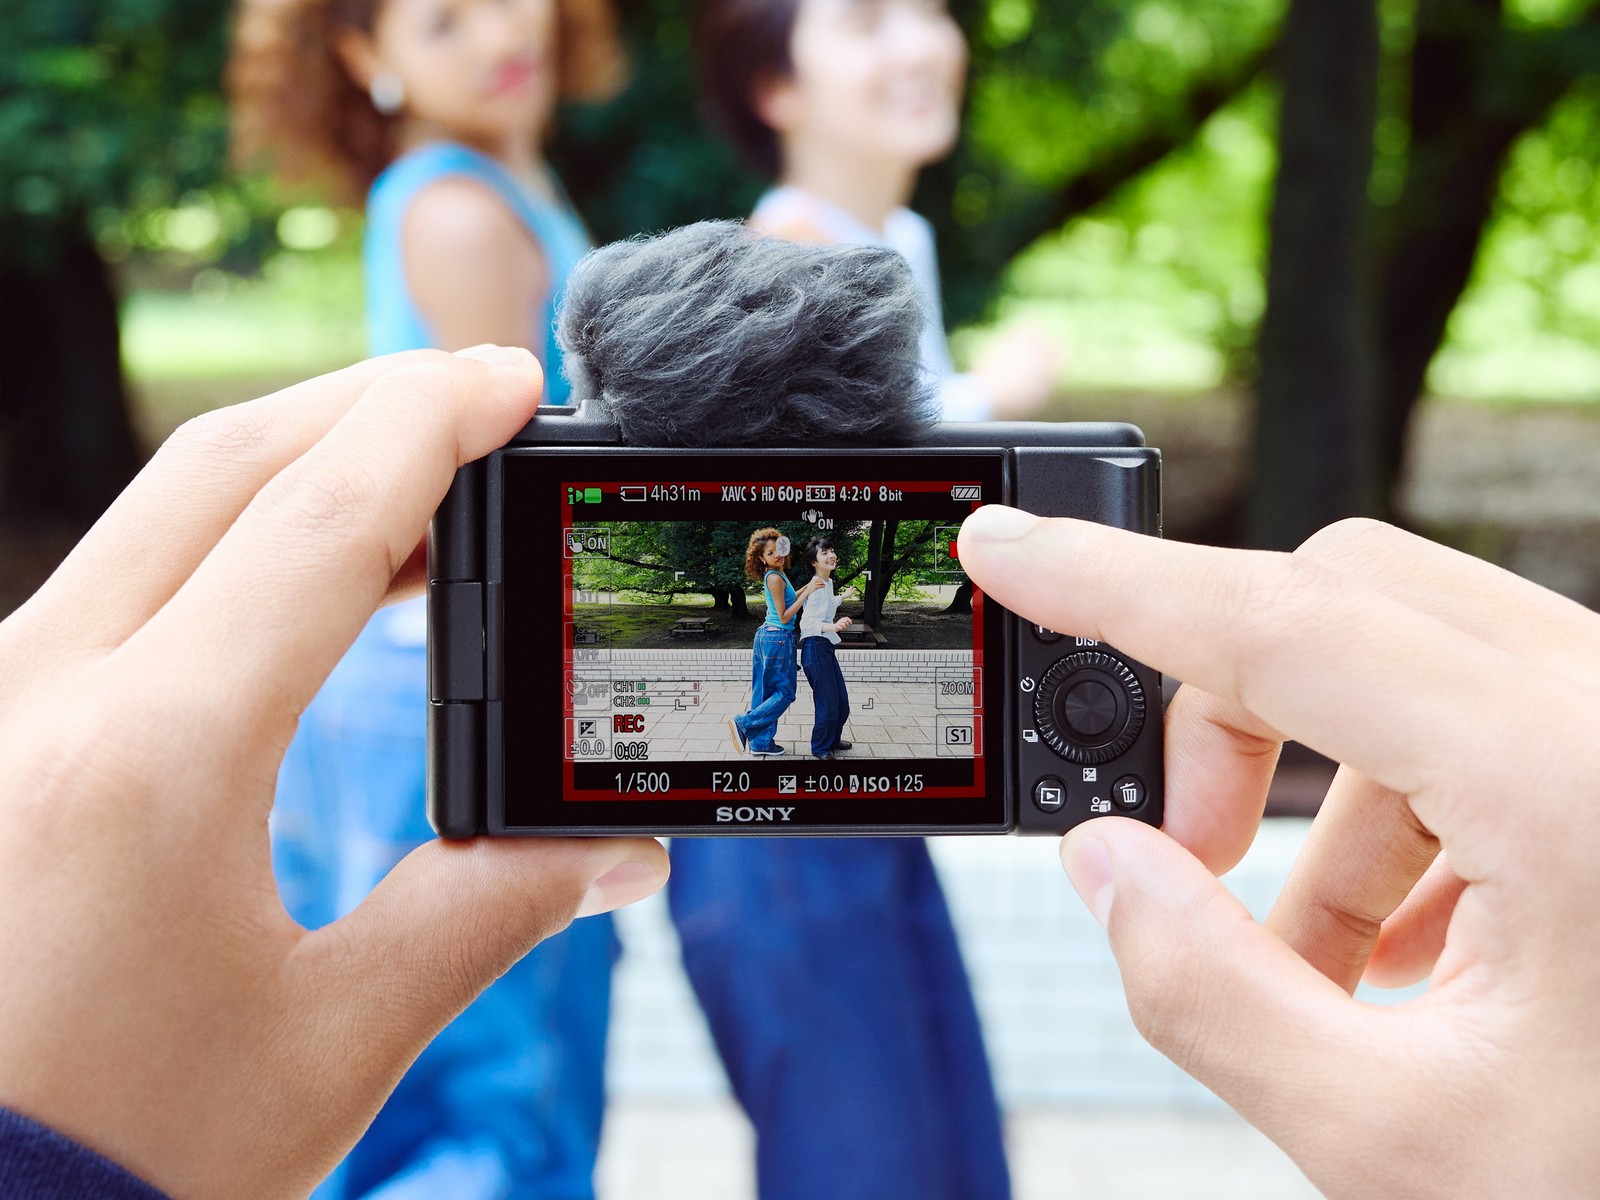 Sony mở rộng dải sản phẩm Vlog với máy quay ZV-1F, thêm sức mạnh cho người sáng tạo nội dung